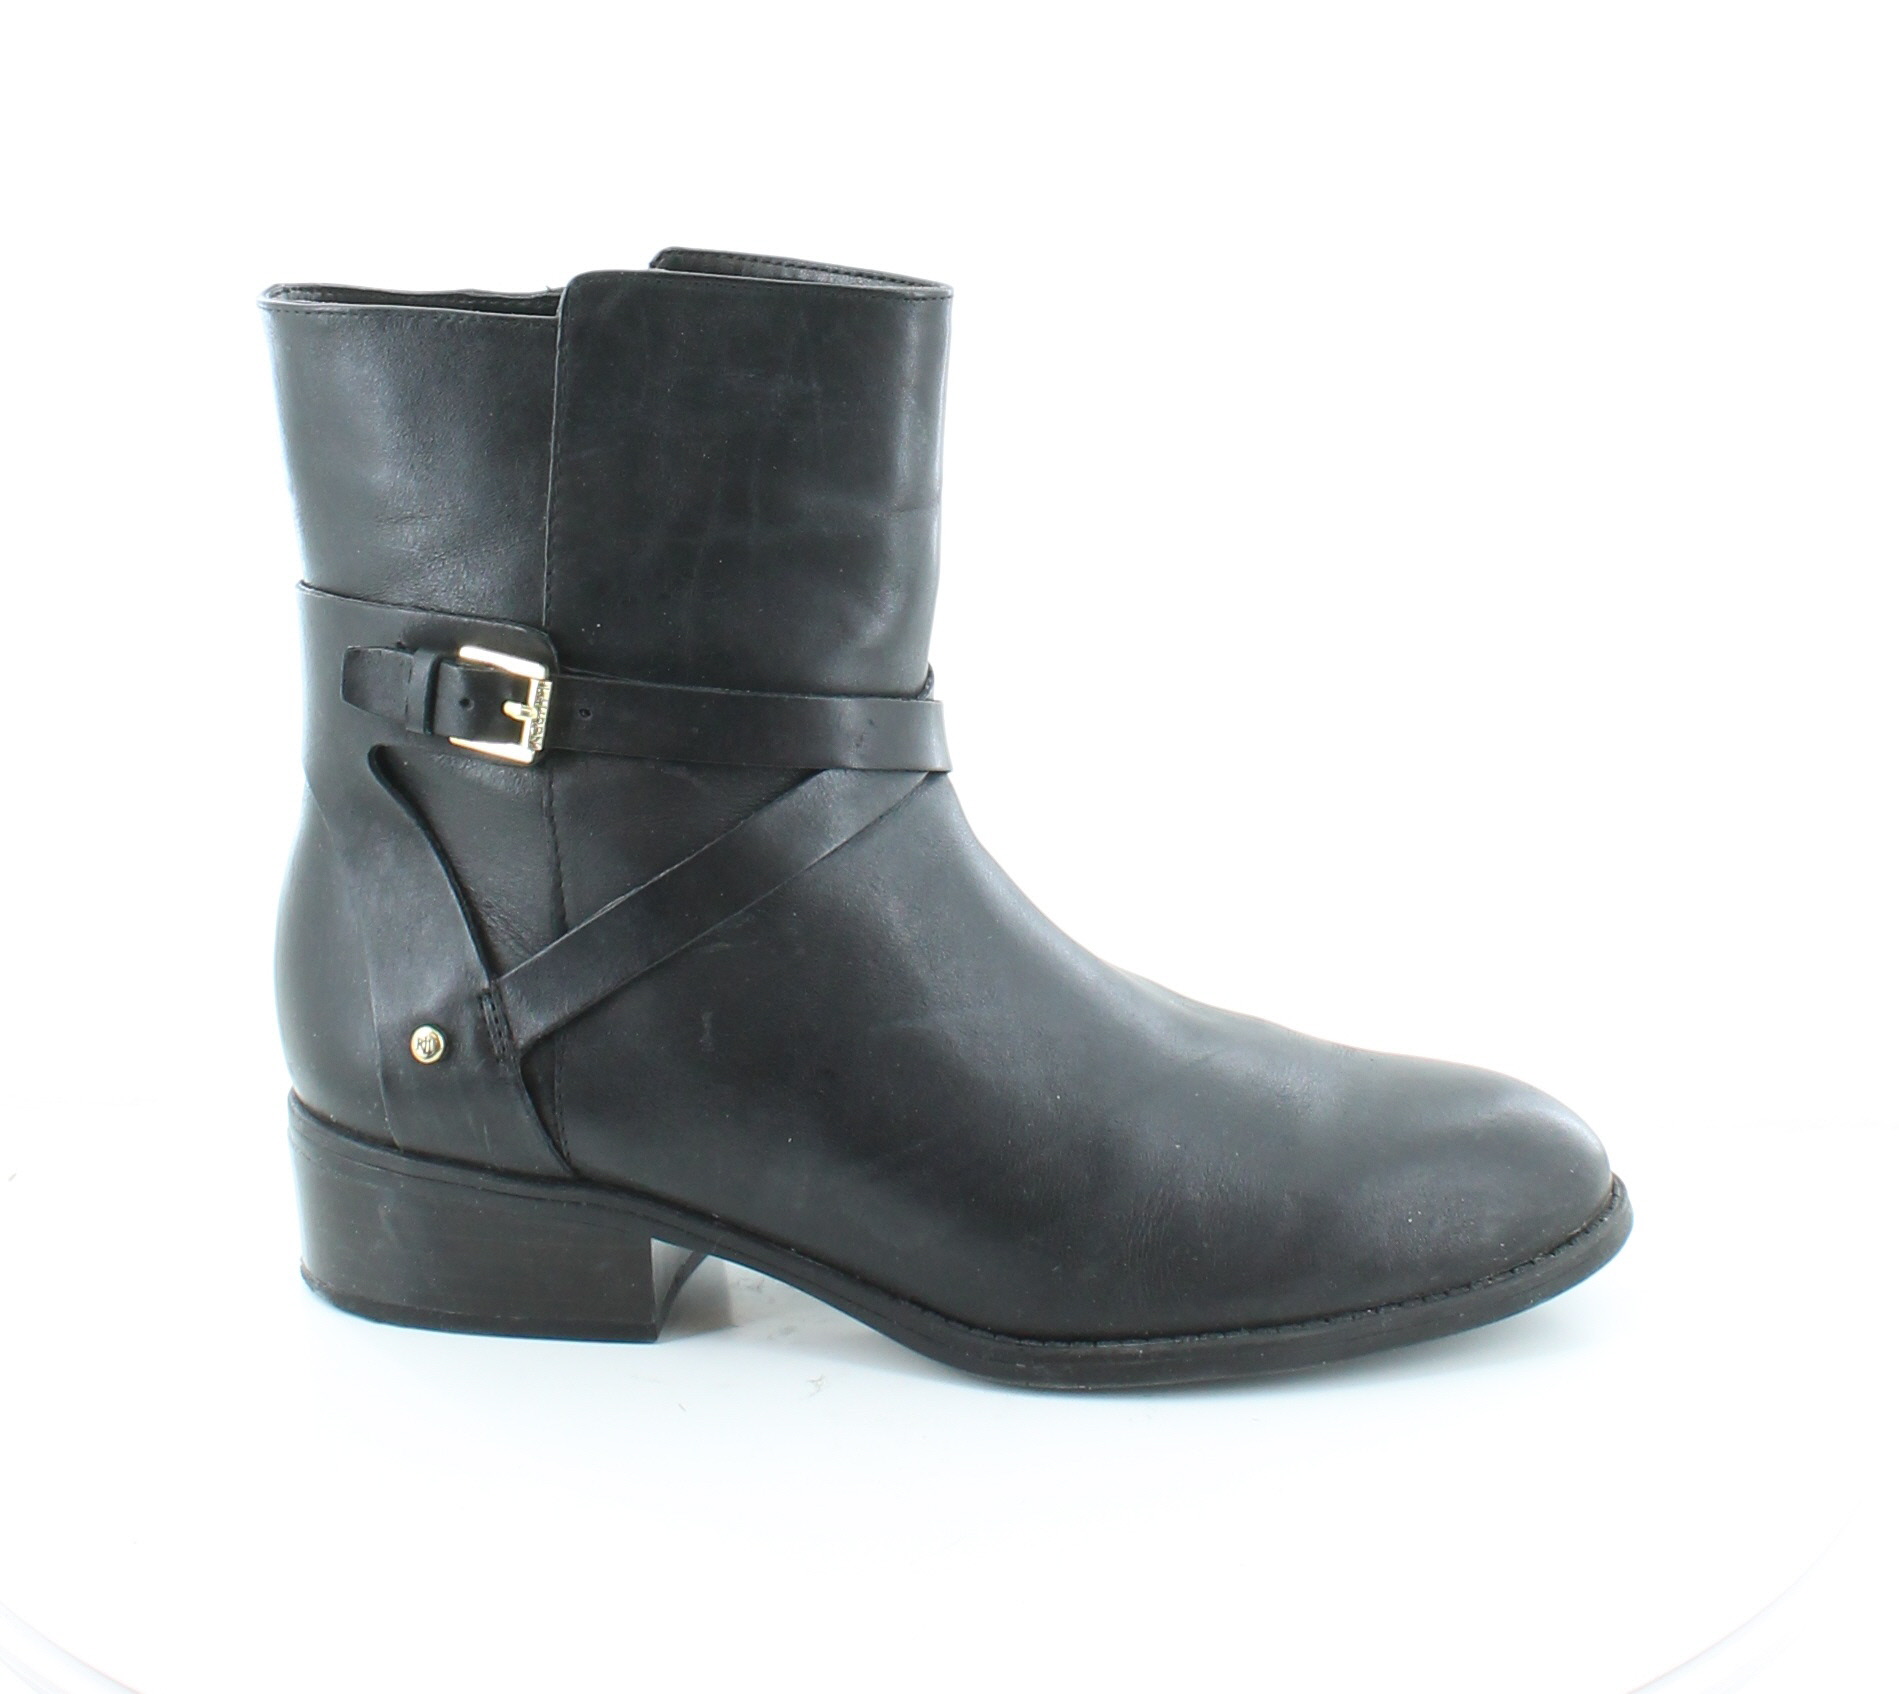 Polo Ralph Lauren Marisol Black Womens Shoes Size 9 M Boots MSRP $129 ...